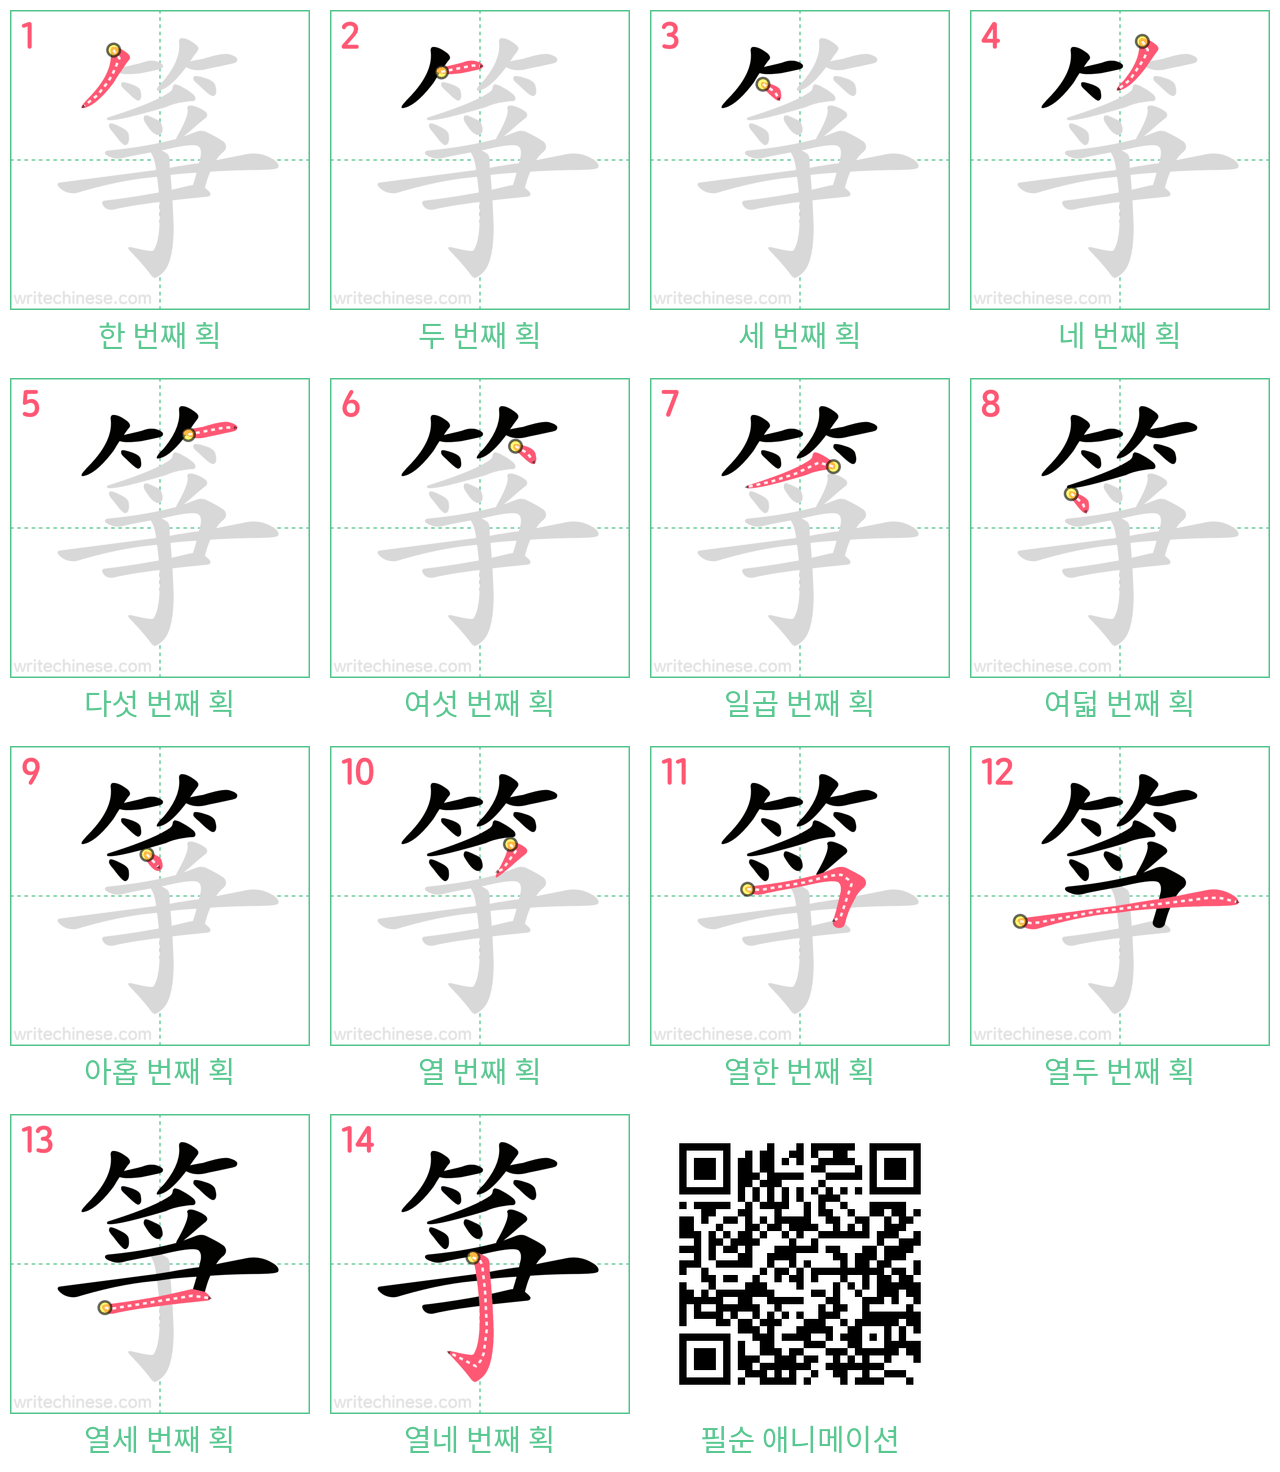 箏 step-by-step stroke order diagrams